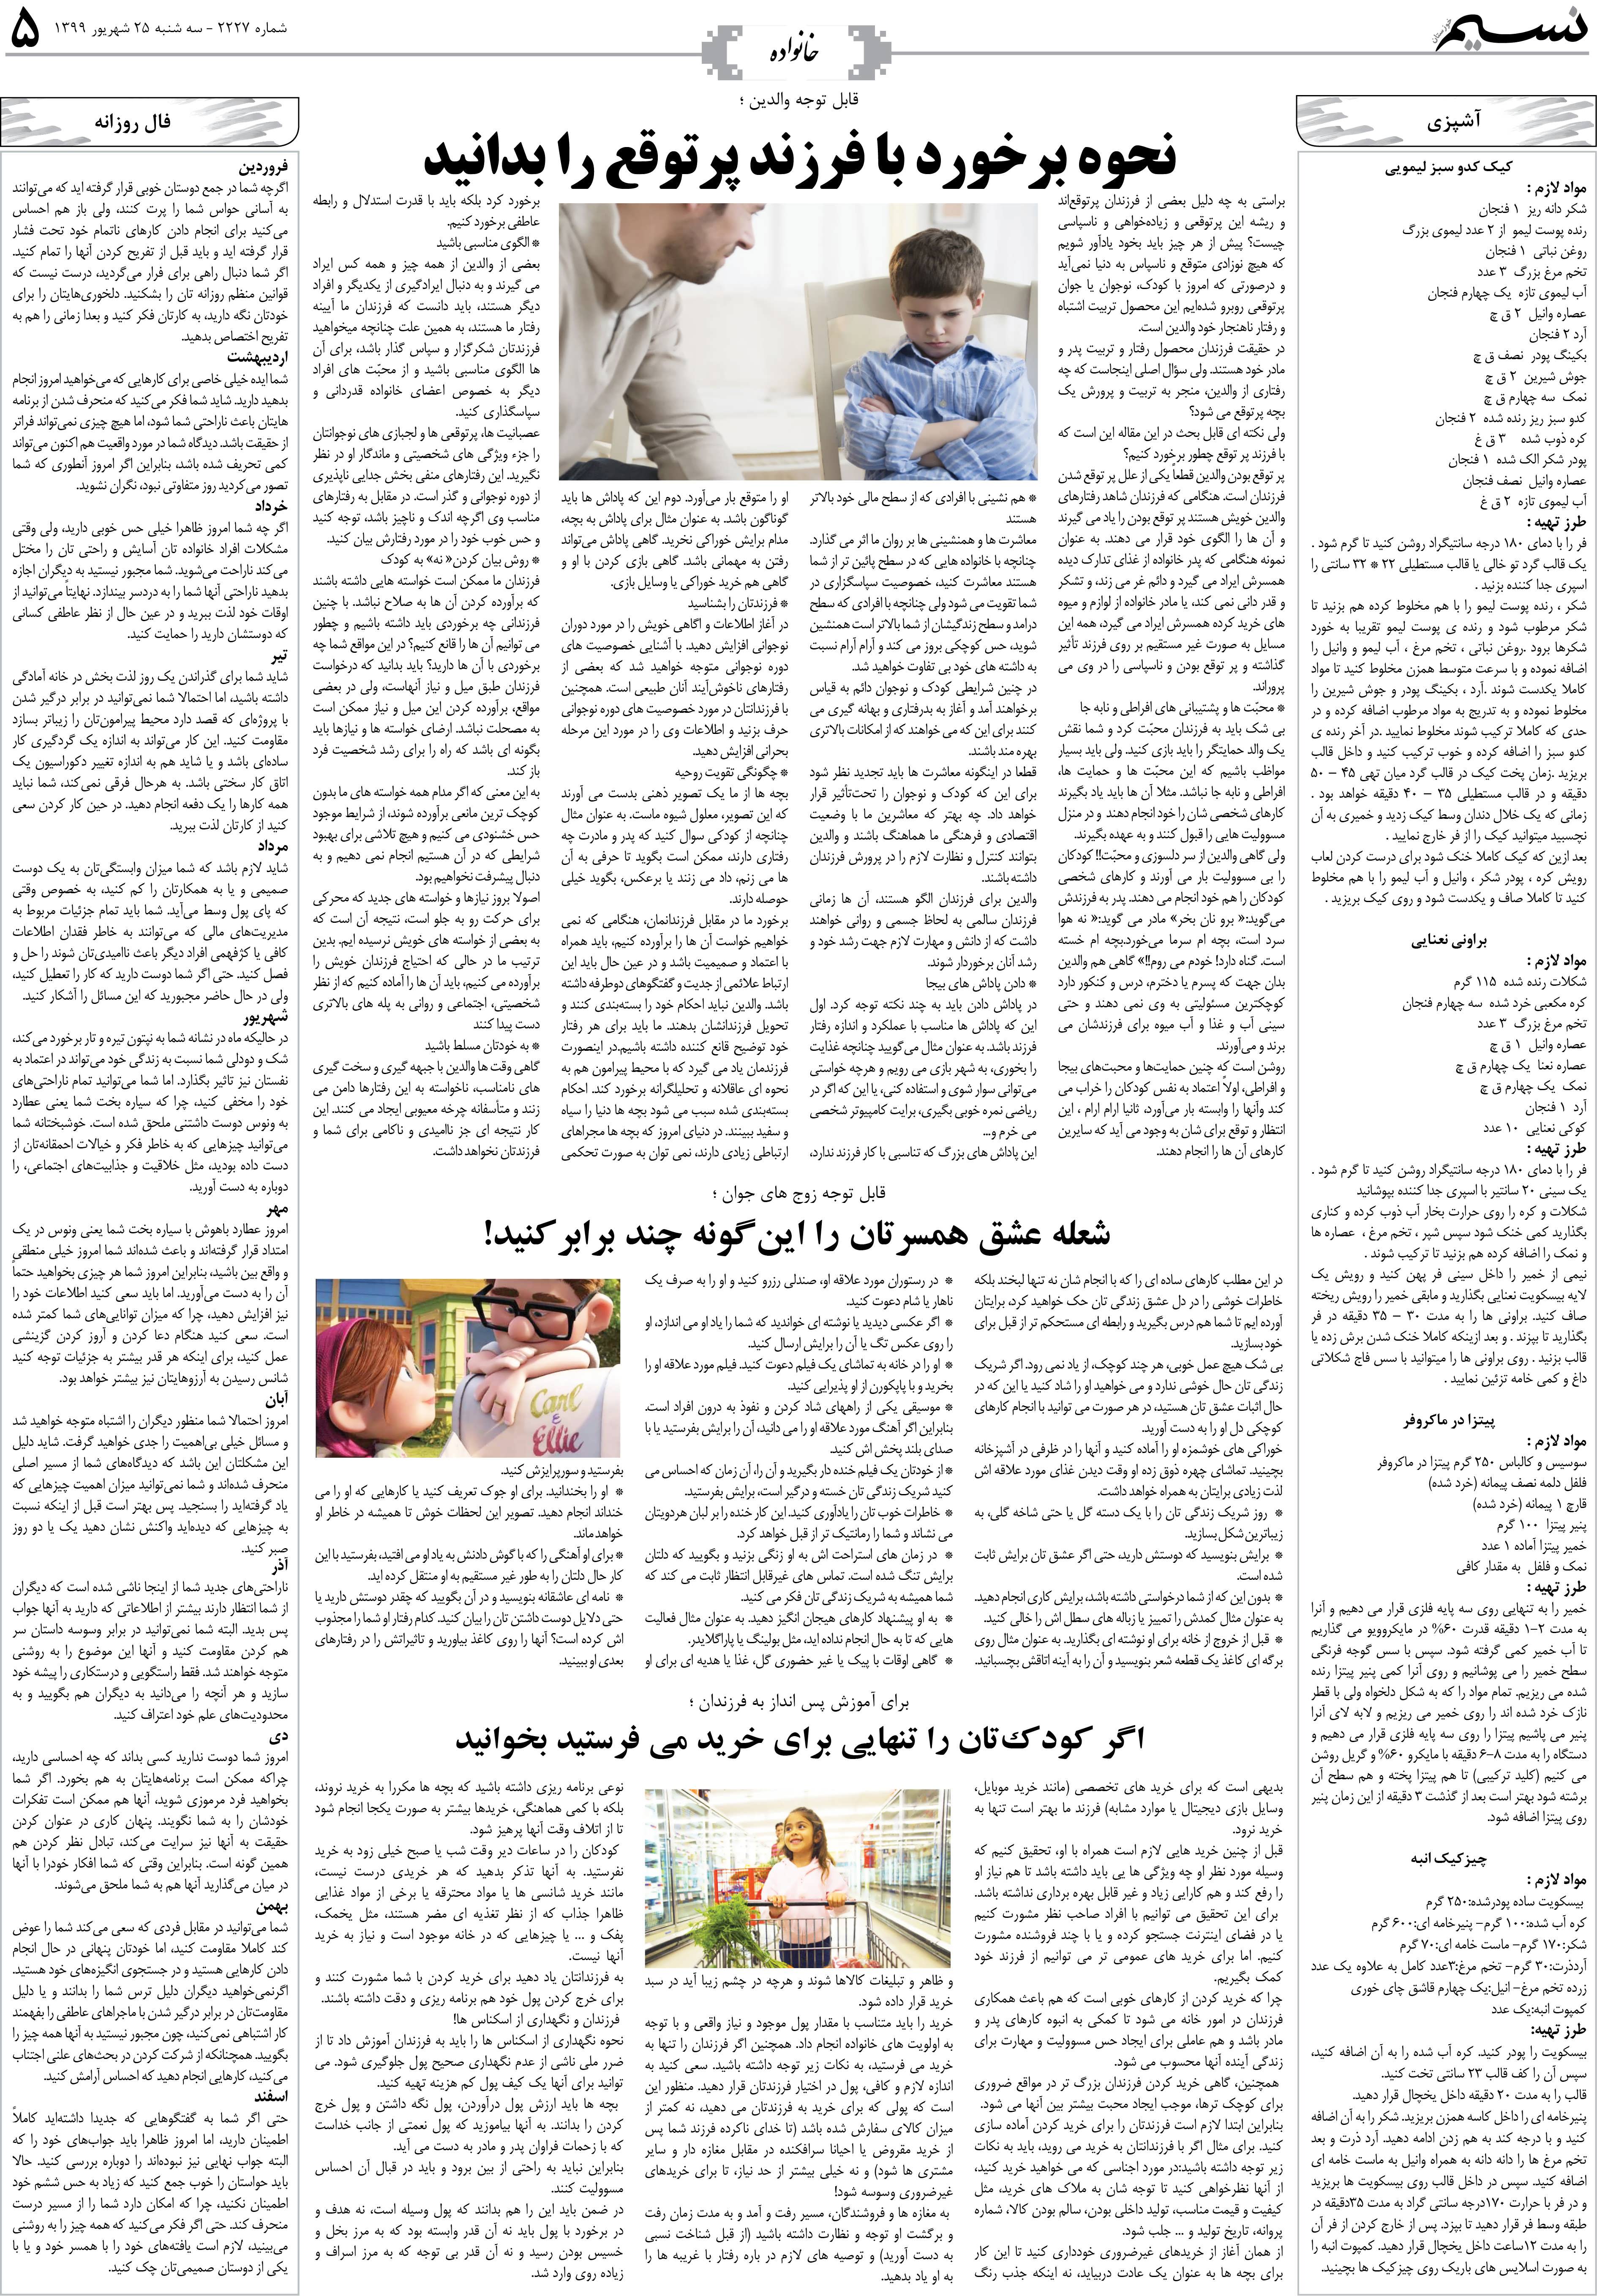 صفحه خانواده روزنامه نسیم شماره 2227